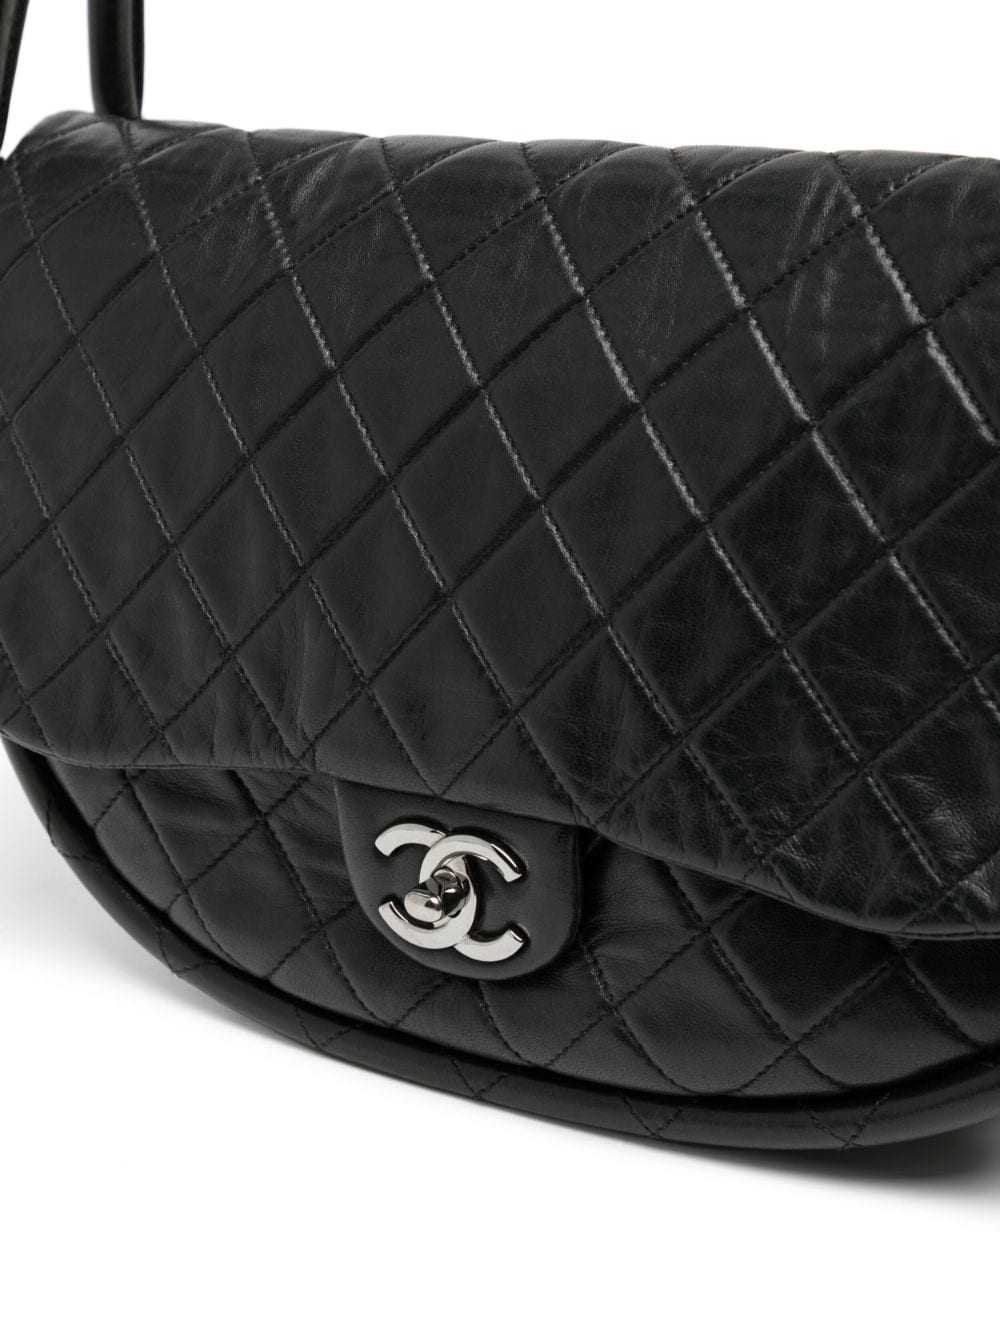 CHANEL Pre-Owned 2014 Hula Hoop tote bag - Black - image 4